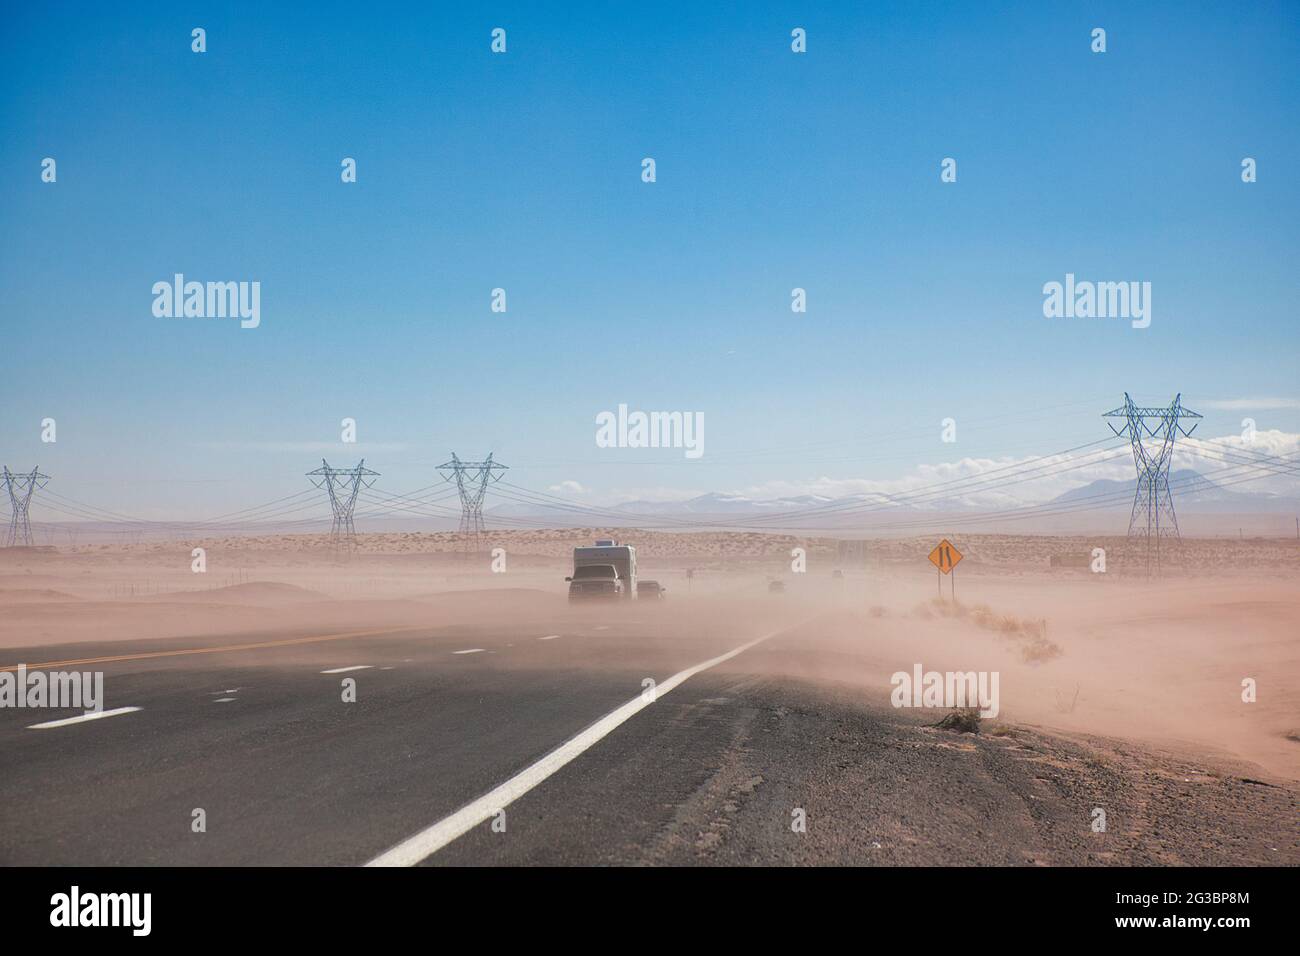 Pilones de electricidad que cruzan una carretera en semi-desierto con una capa de polvo soplando a través de la carretera y dos vehículos que viajan, en Arizona, los Estados Unidos Foto de stock